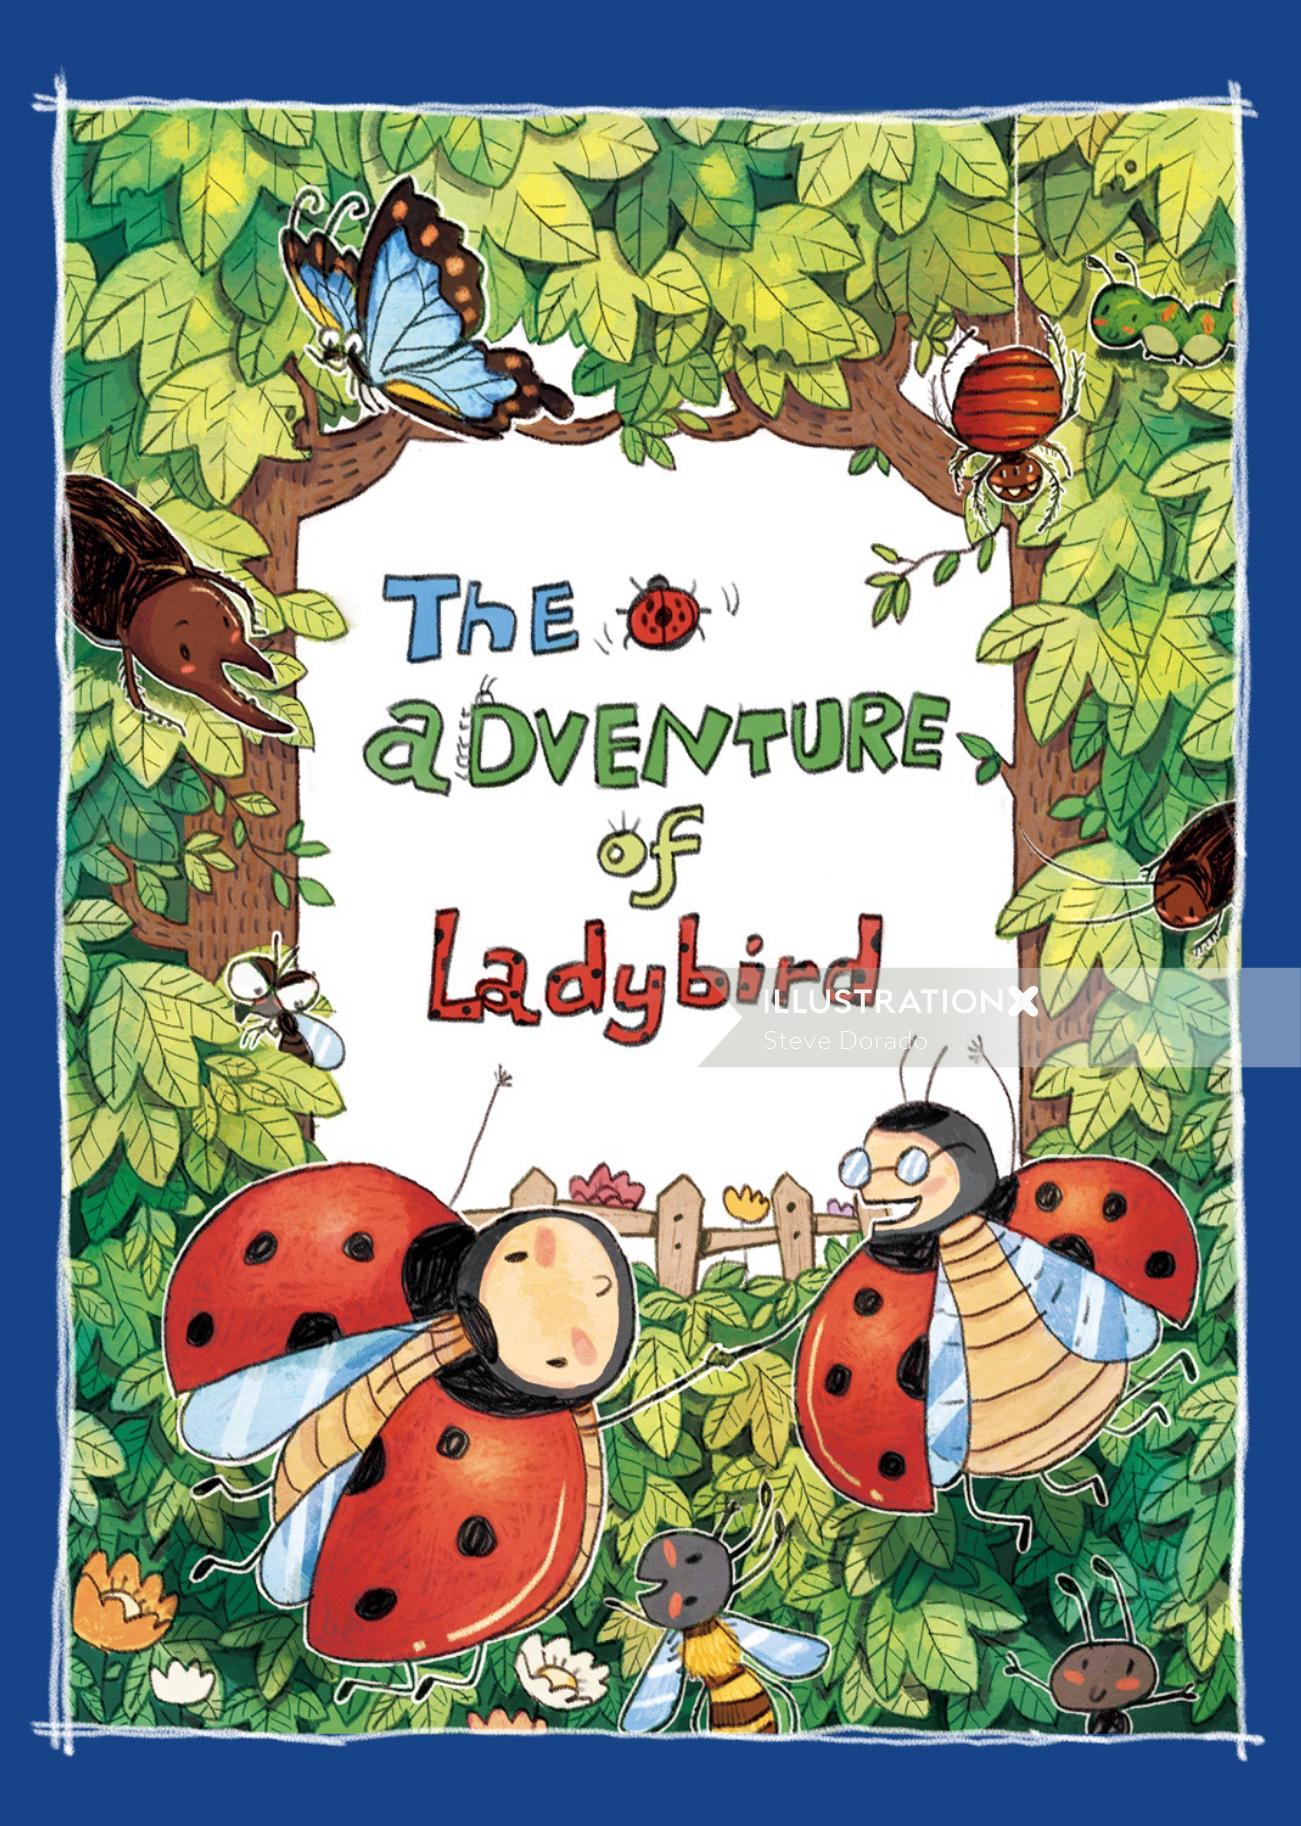 ladybird illustration